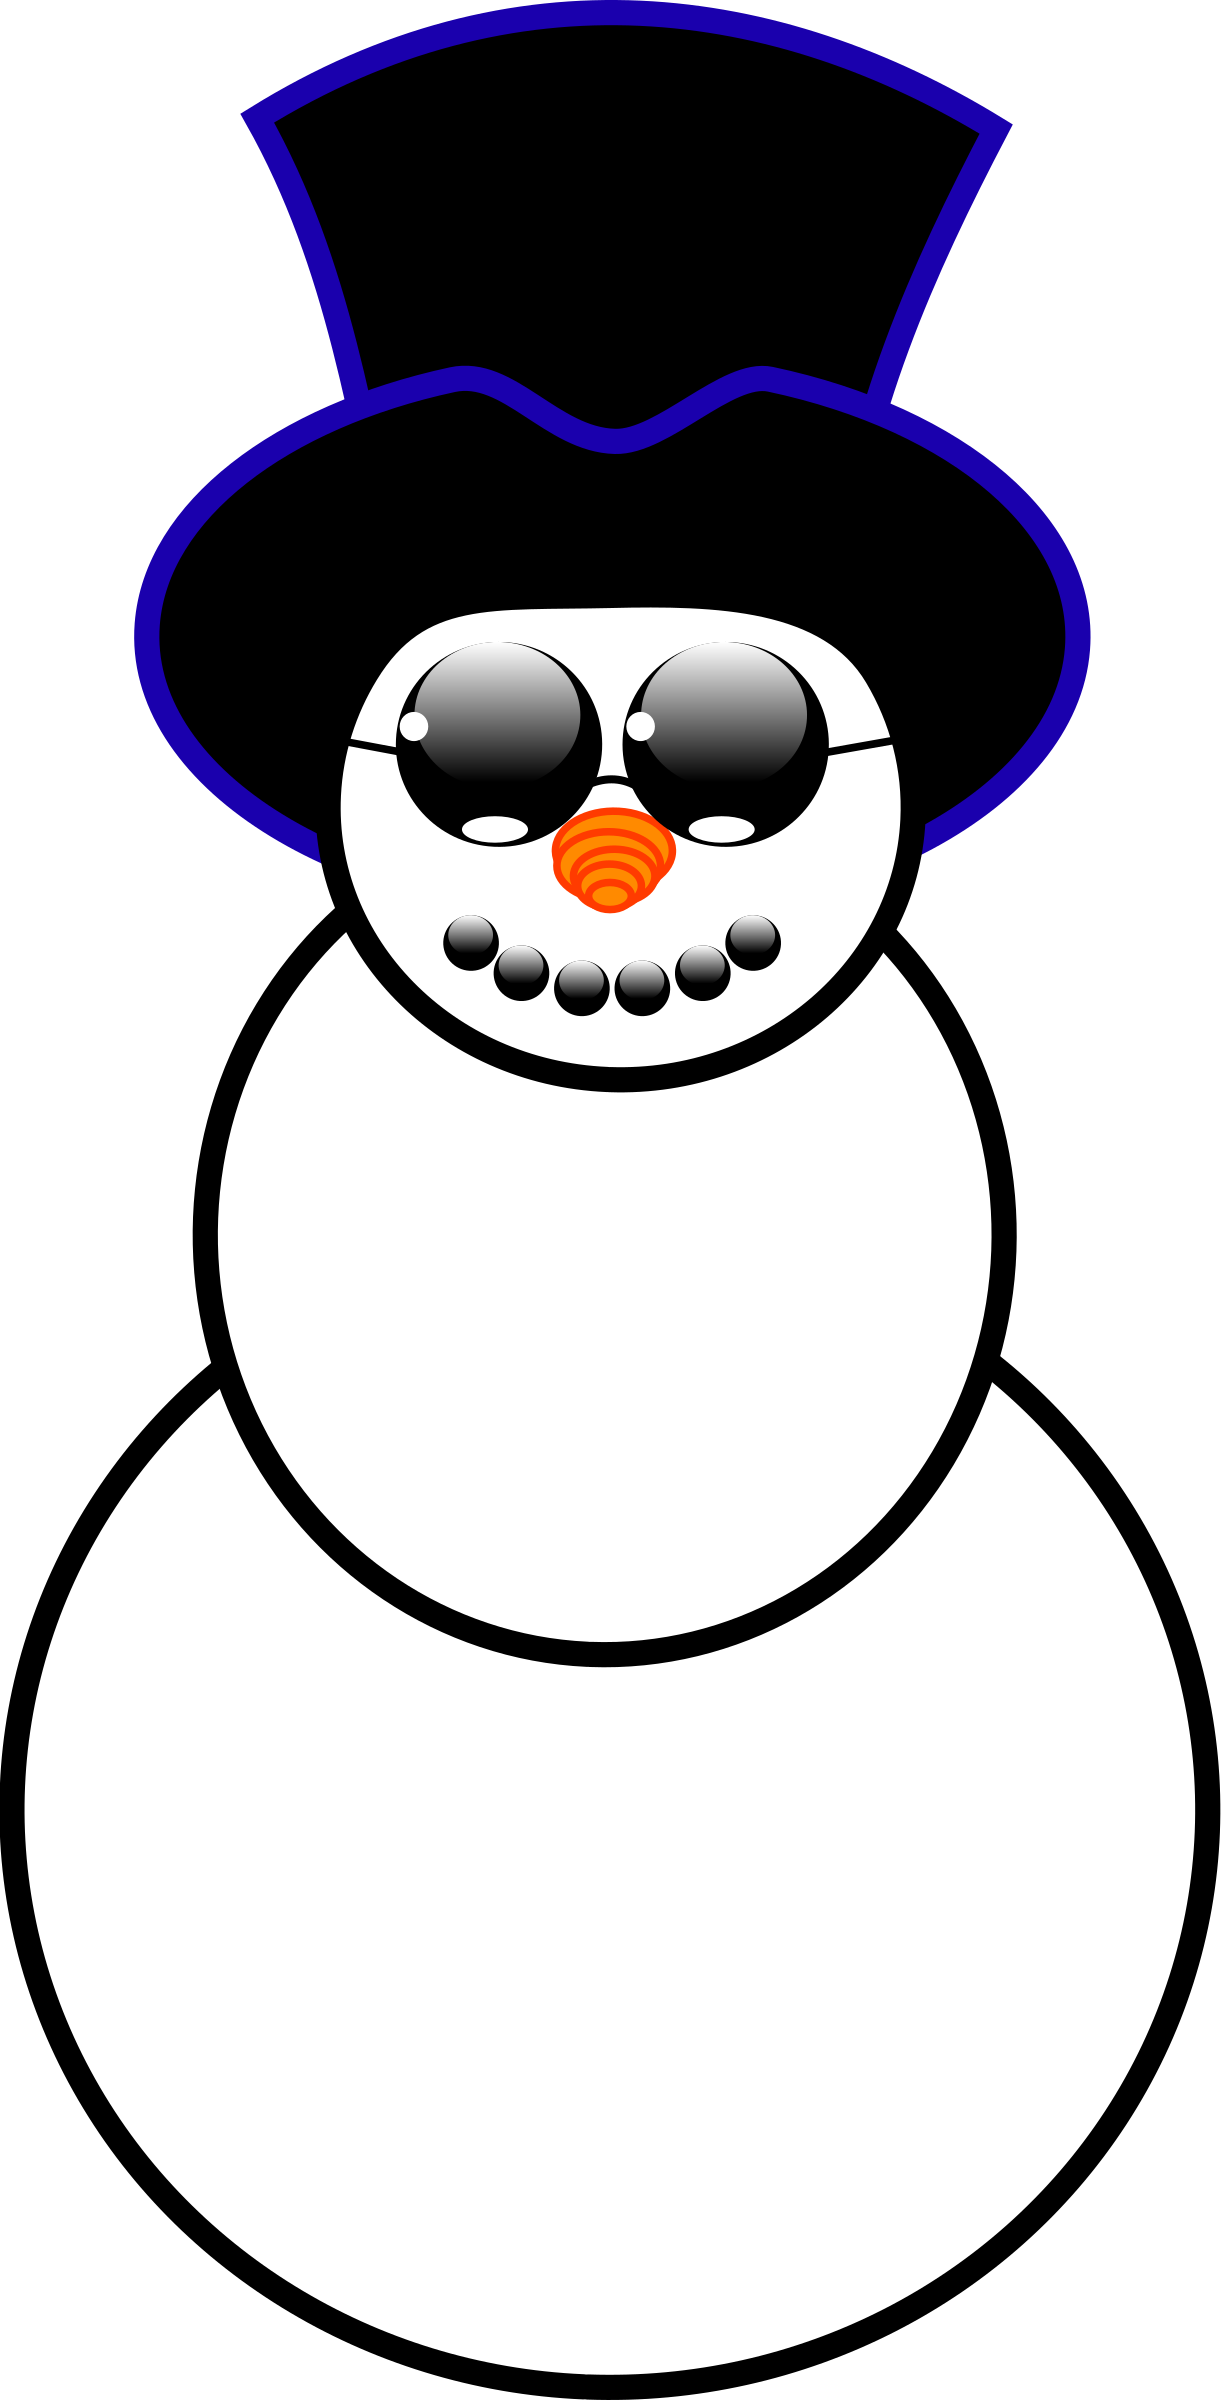 snowman hat clipart - photo #45